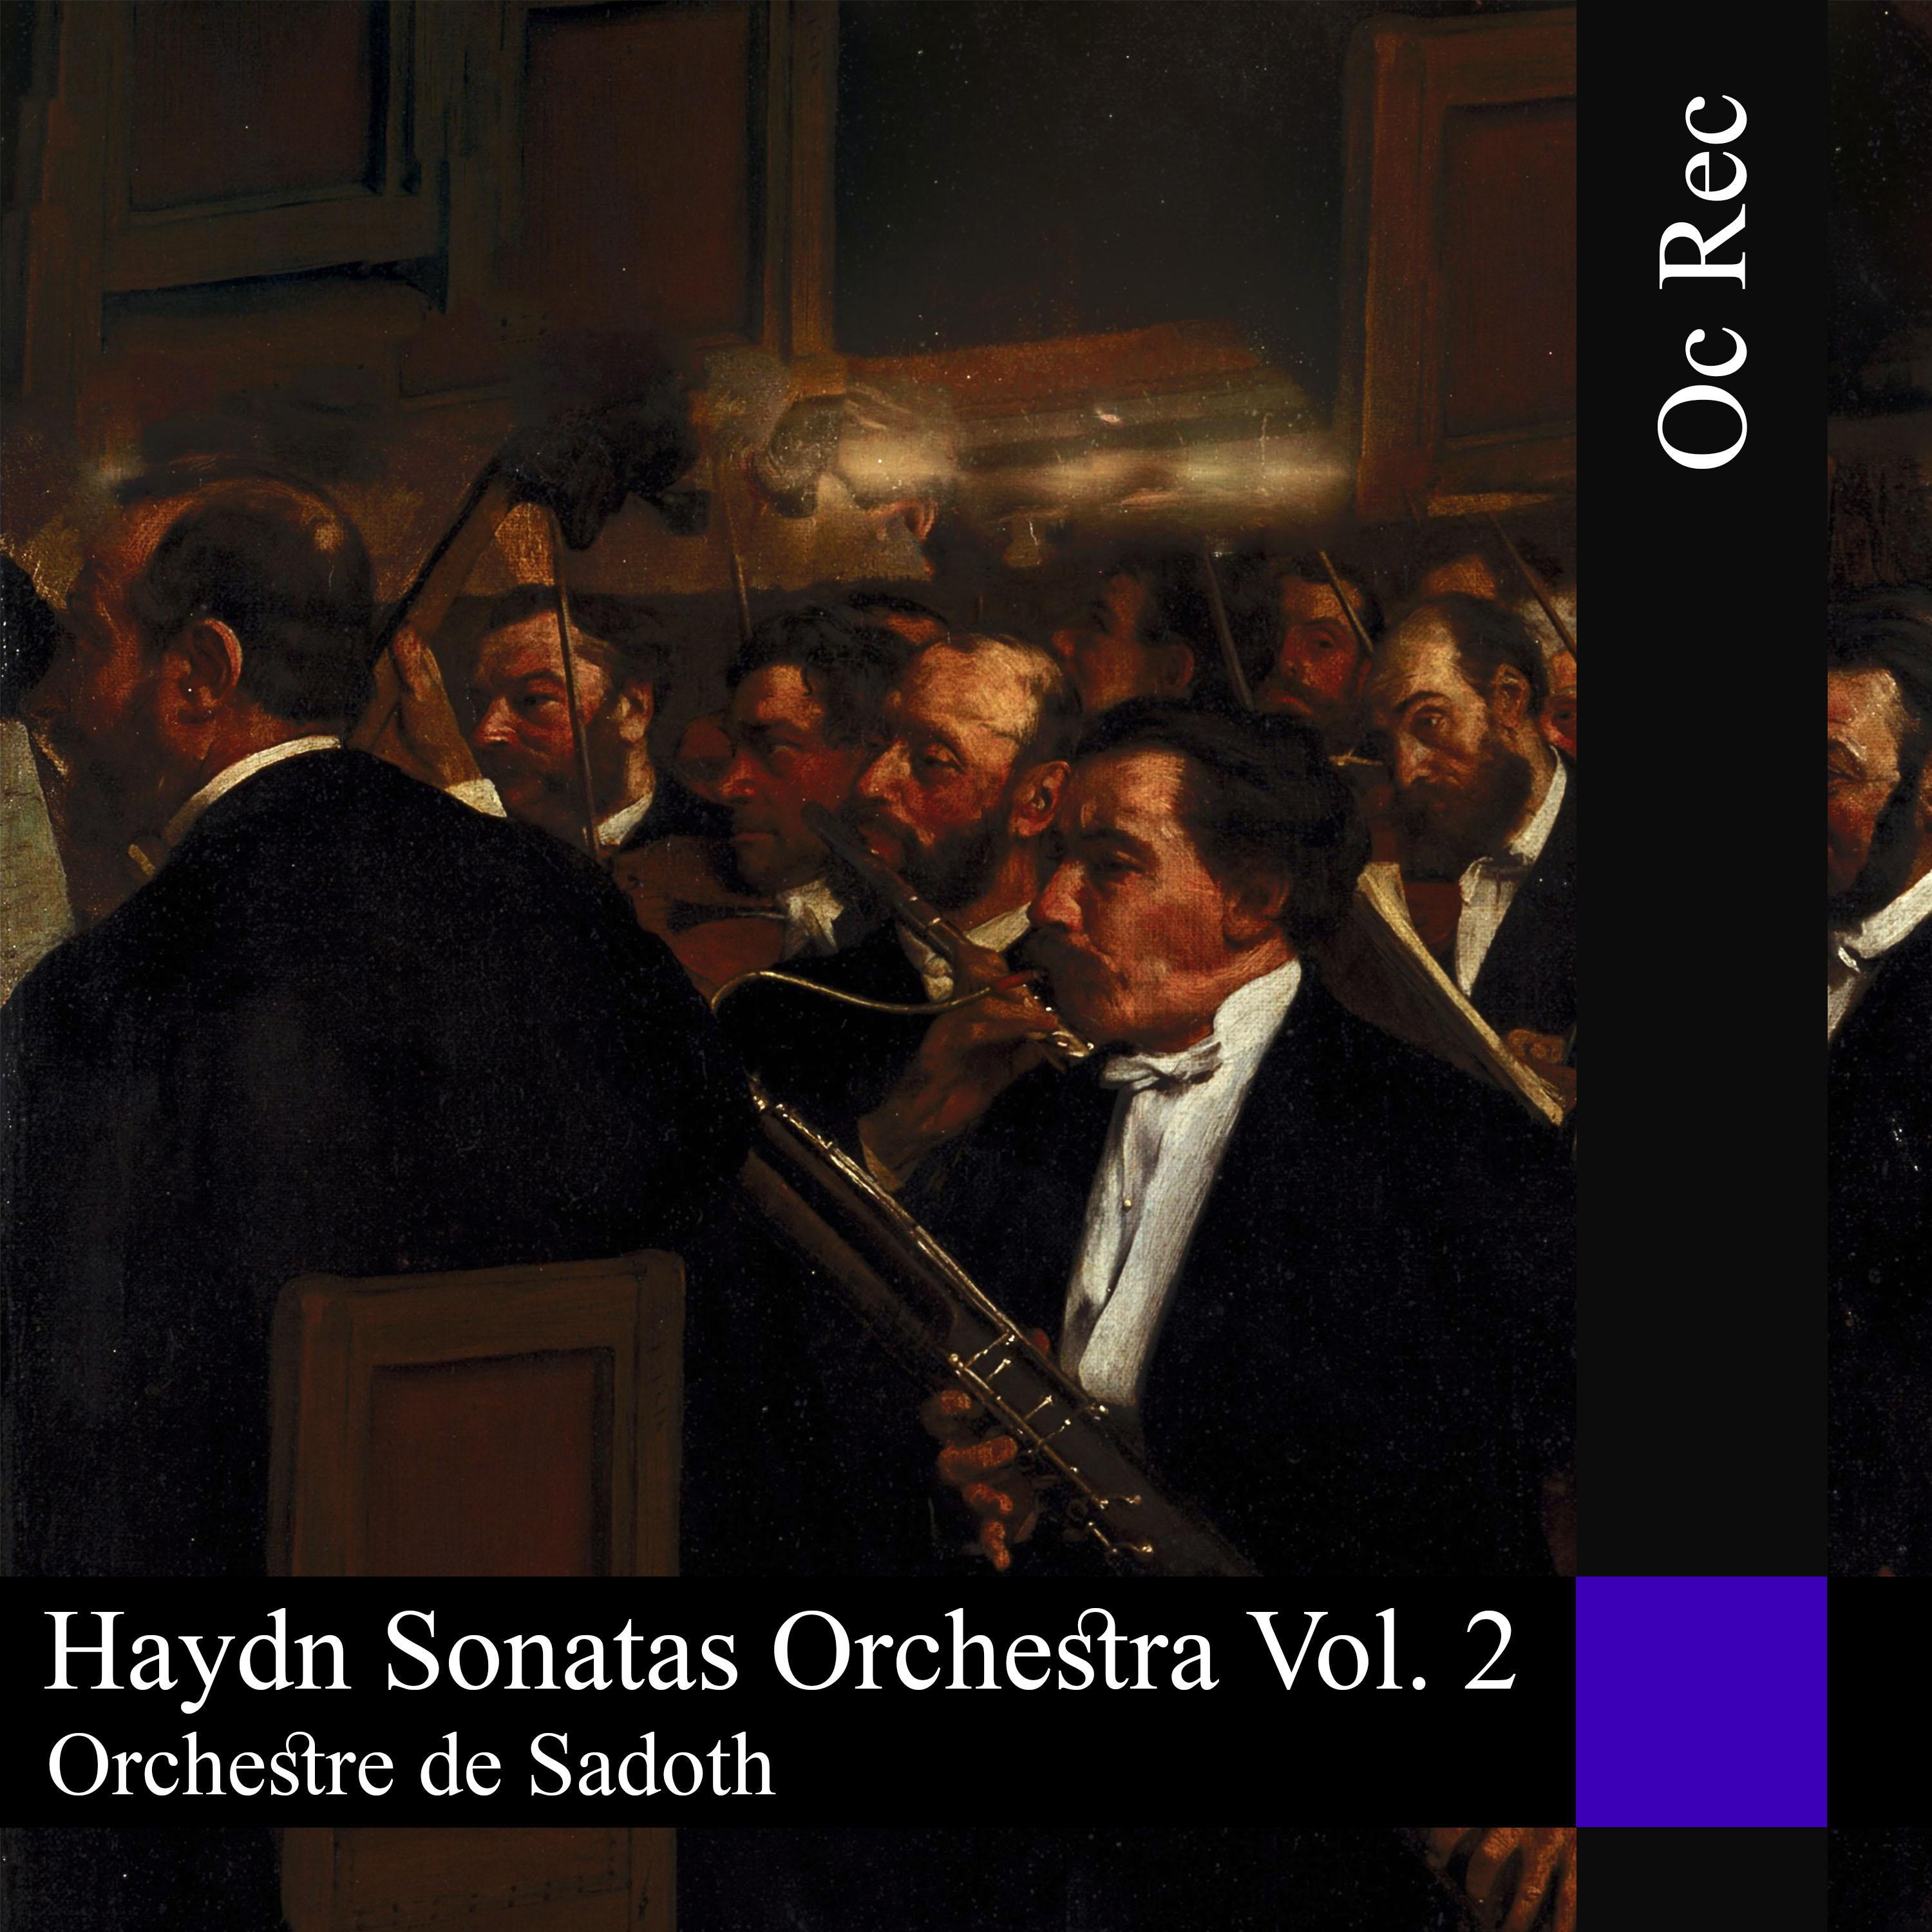 Sonatas Orchestra Vol. 2